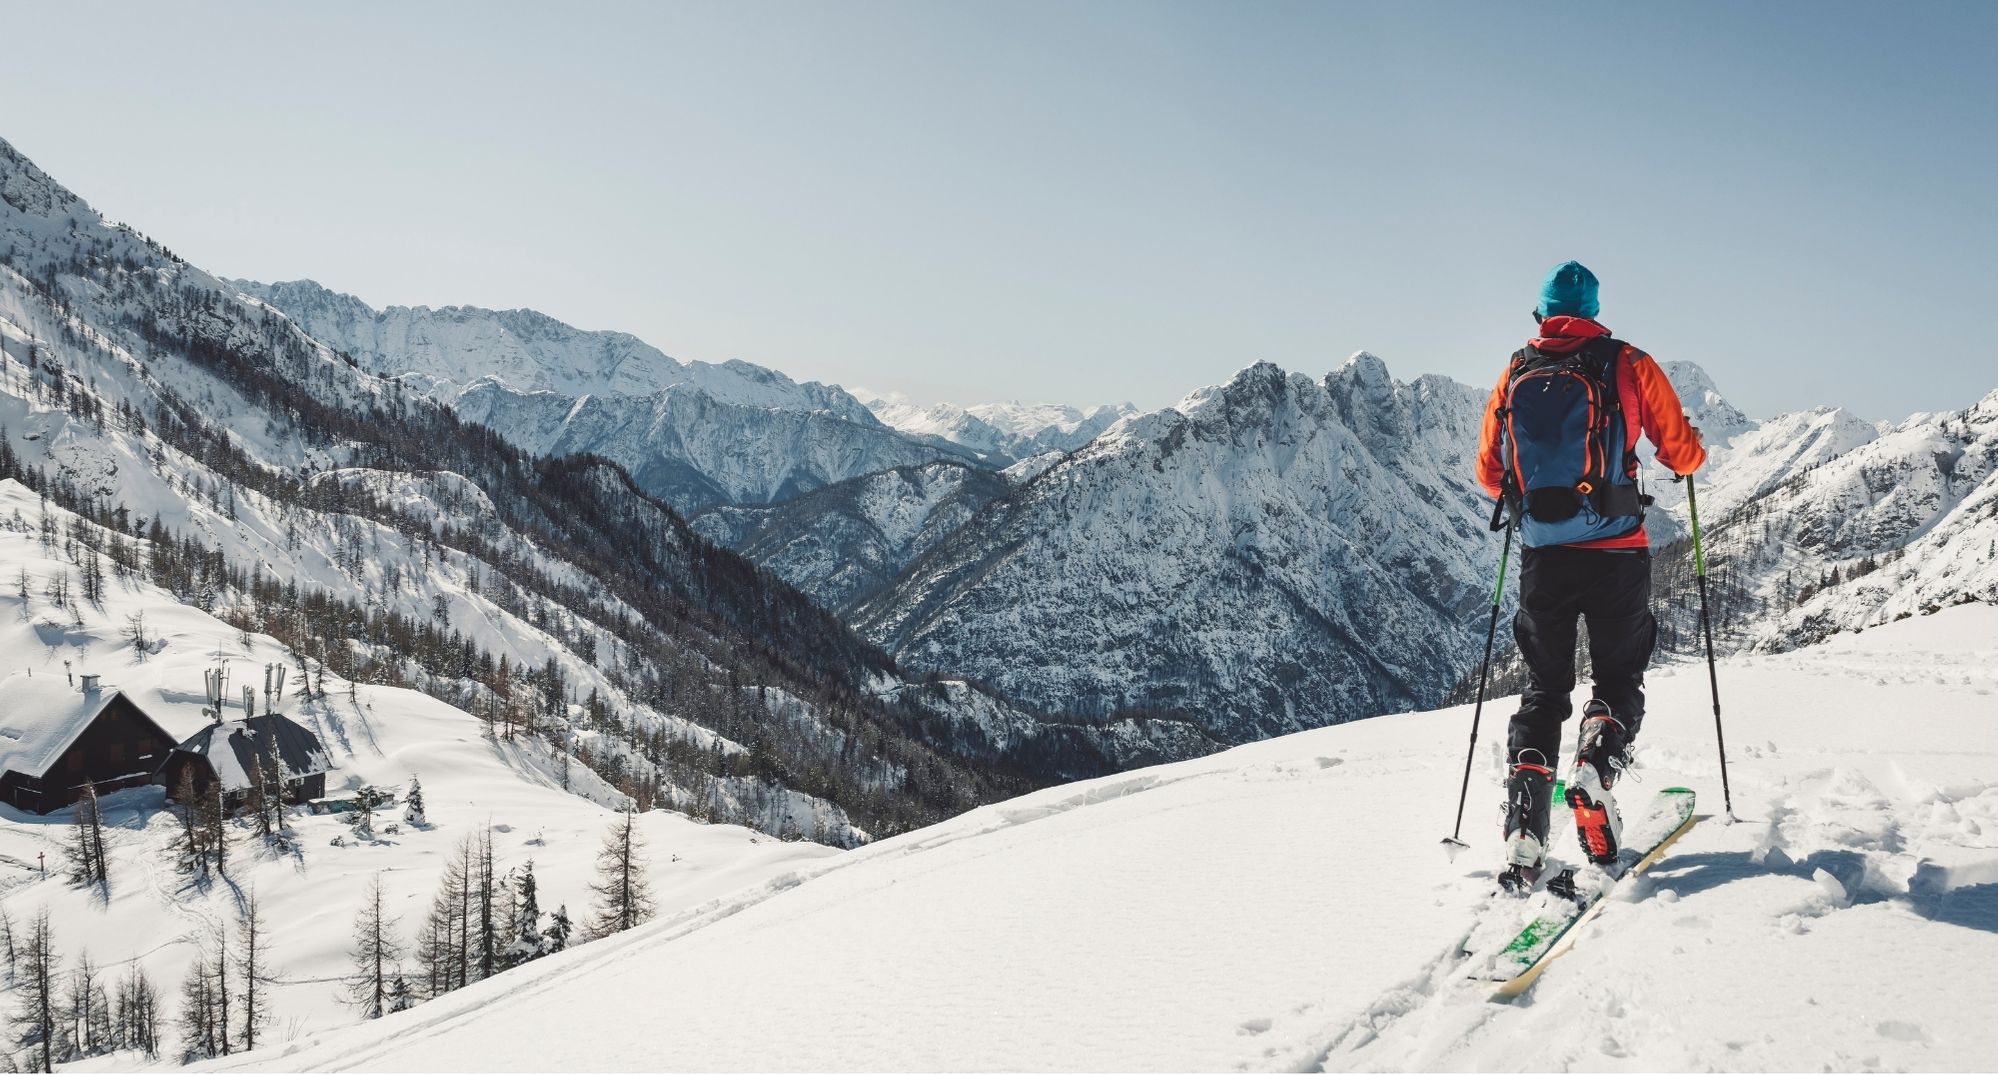 Co to jest skitouring i jak się przygotować?